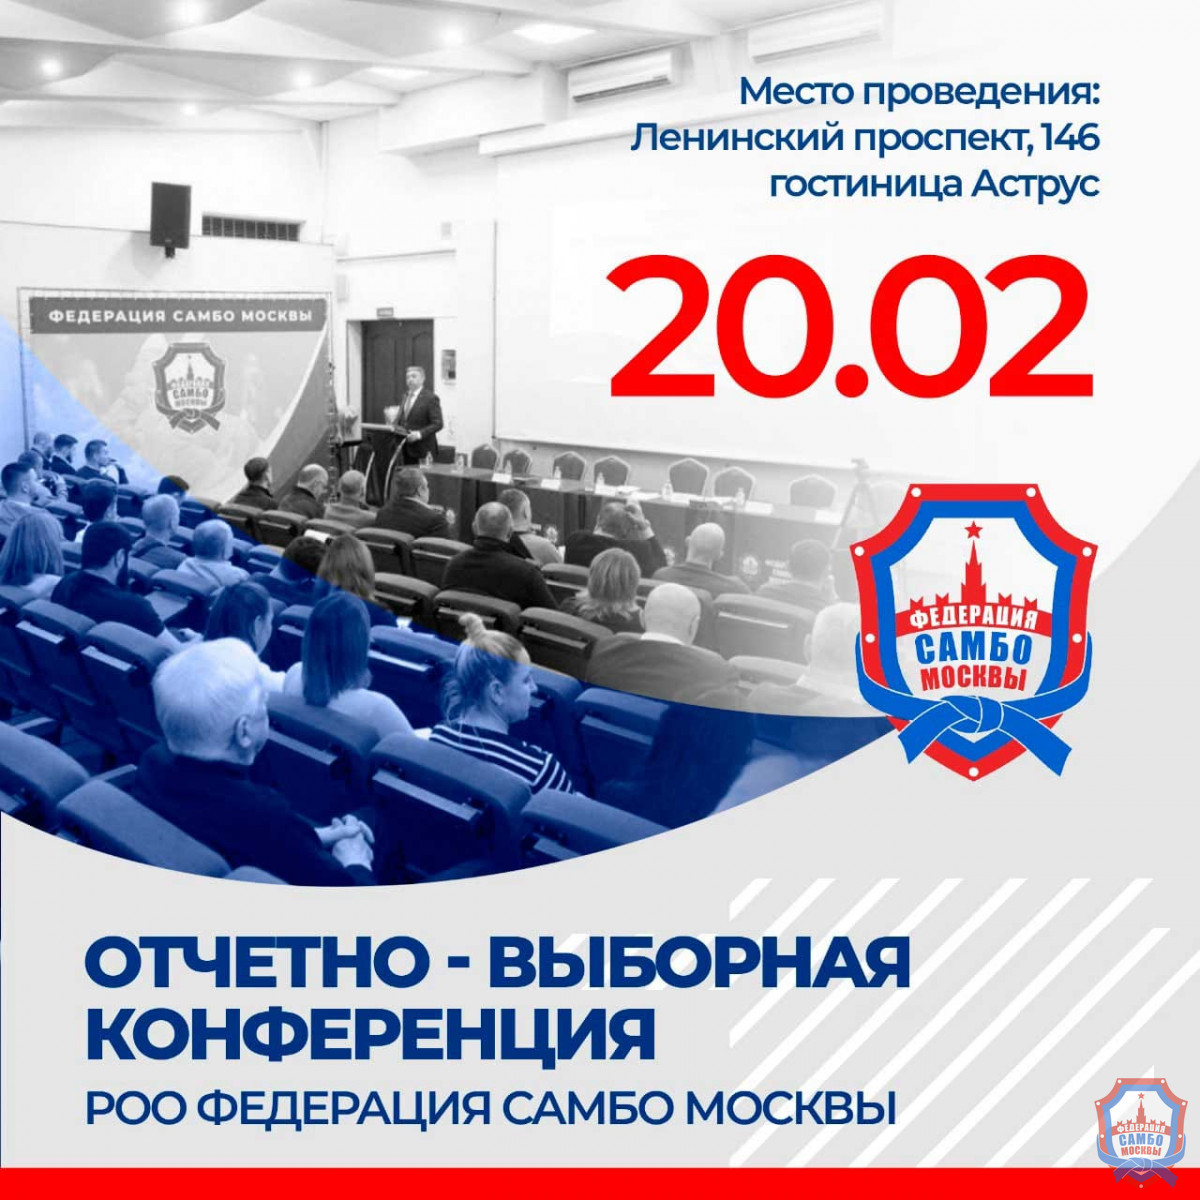 Отчетно-выборная конференция РОО Федерация самбо Москвы